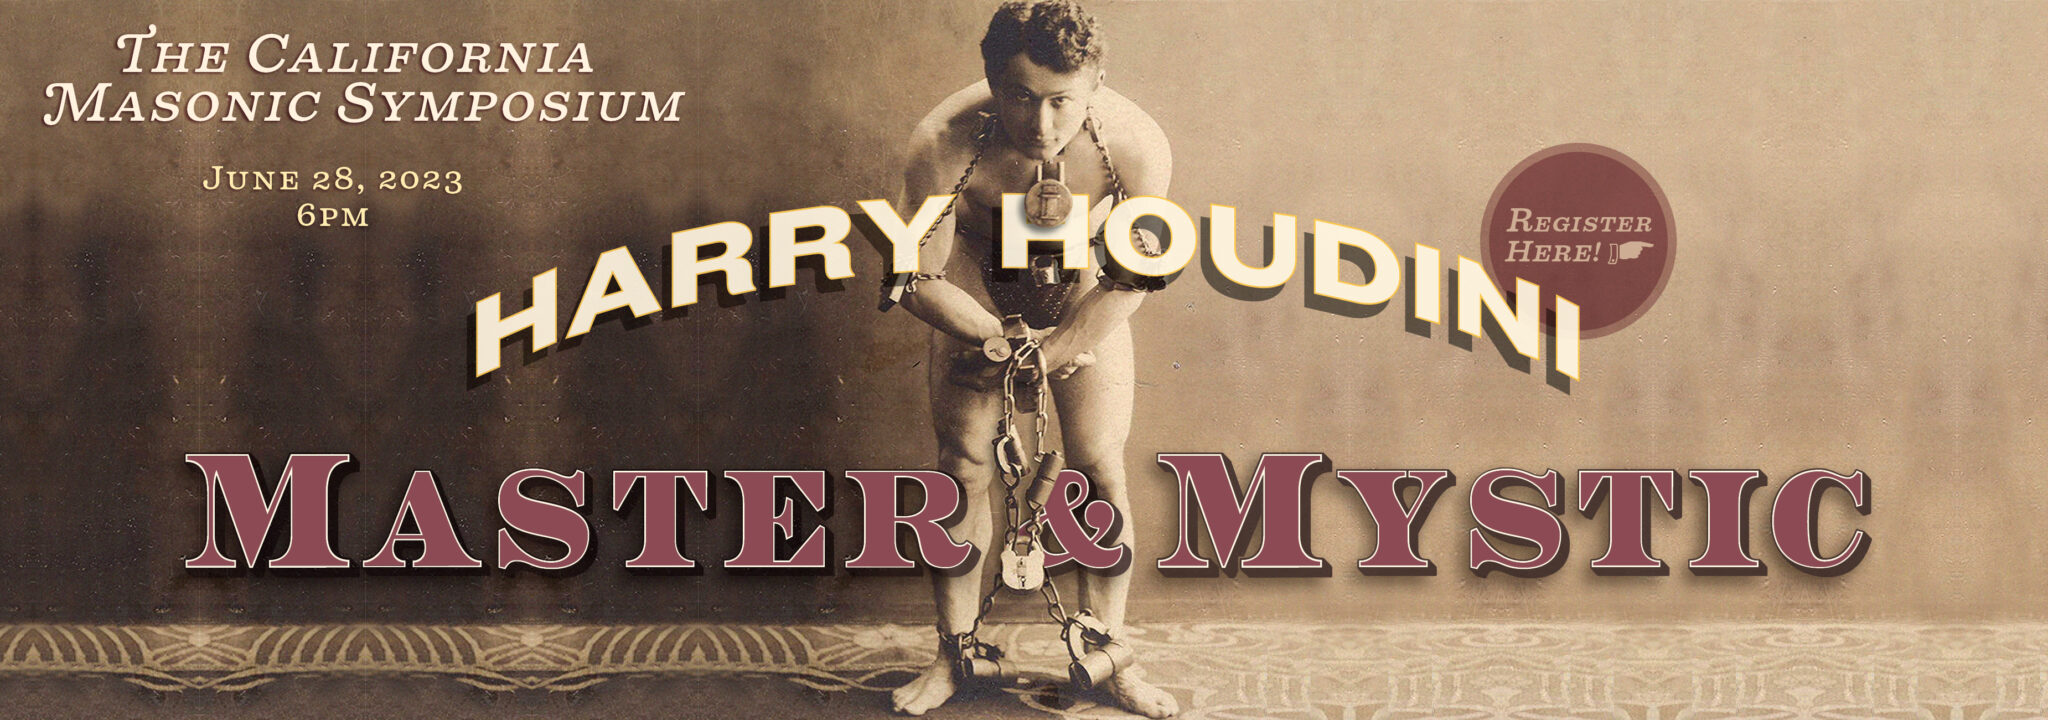 Simposio Masónico de California 2023: Harry Houdini - Maestro y Místico. Explorando las conexiones entre la magia y la Masonería, Francmasonería